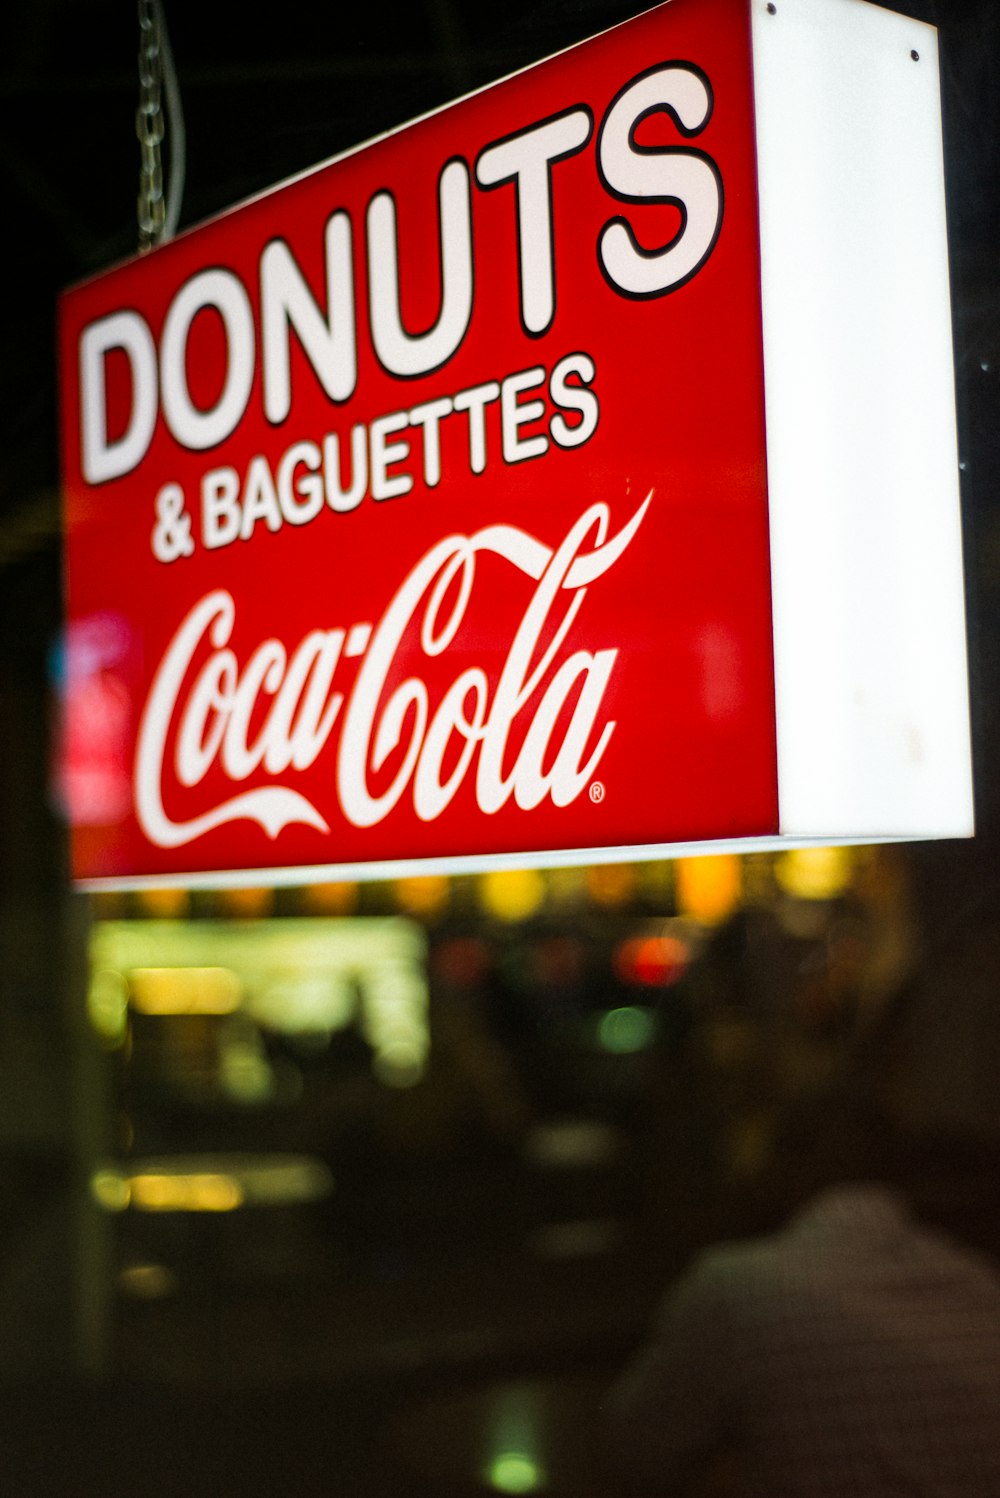 fermer la photographie de la signalétique Donuts & Baguettes Coca-Cola